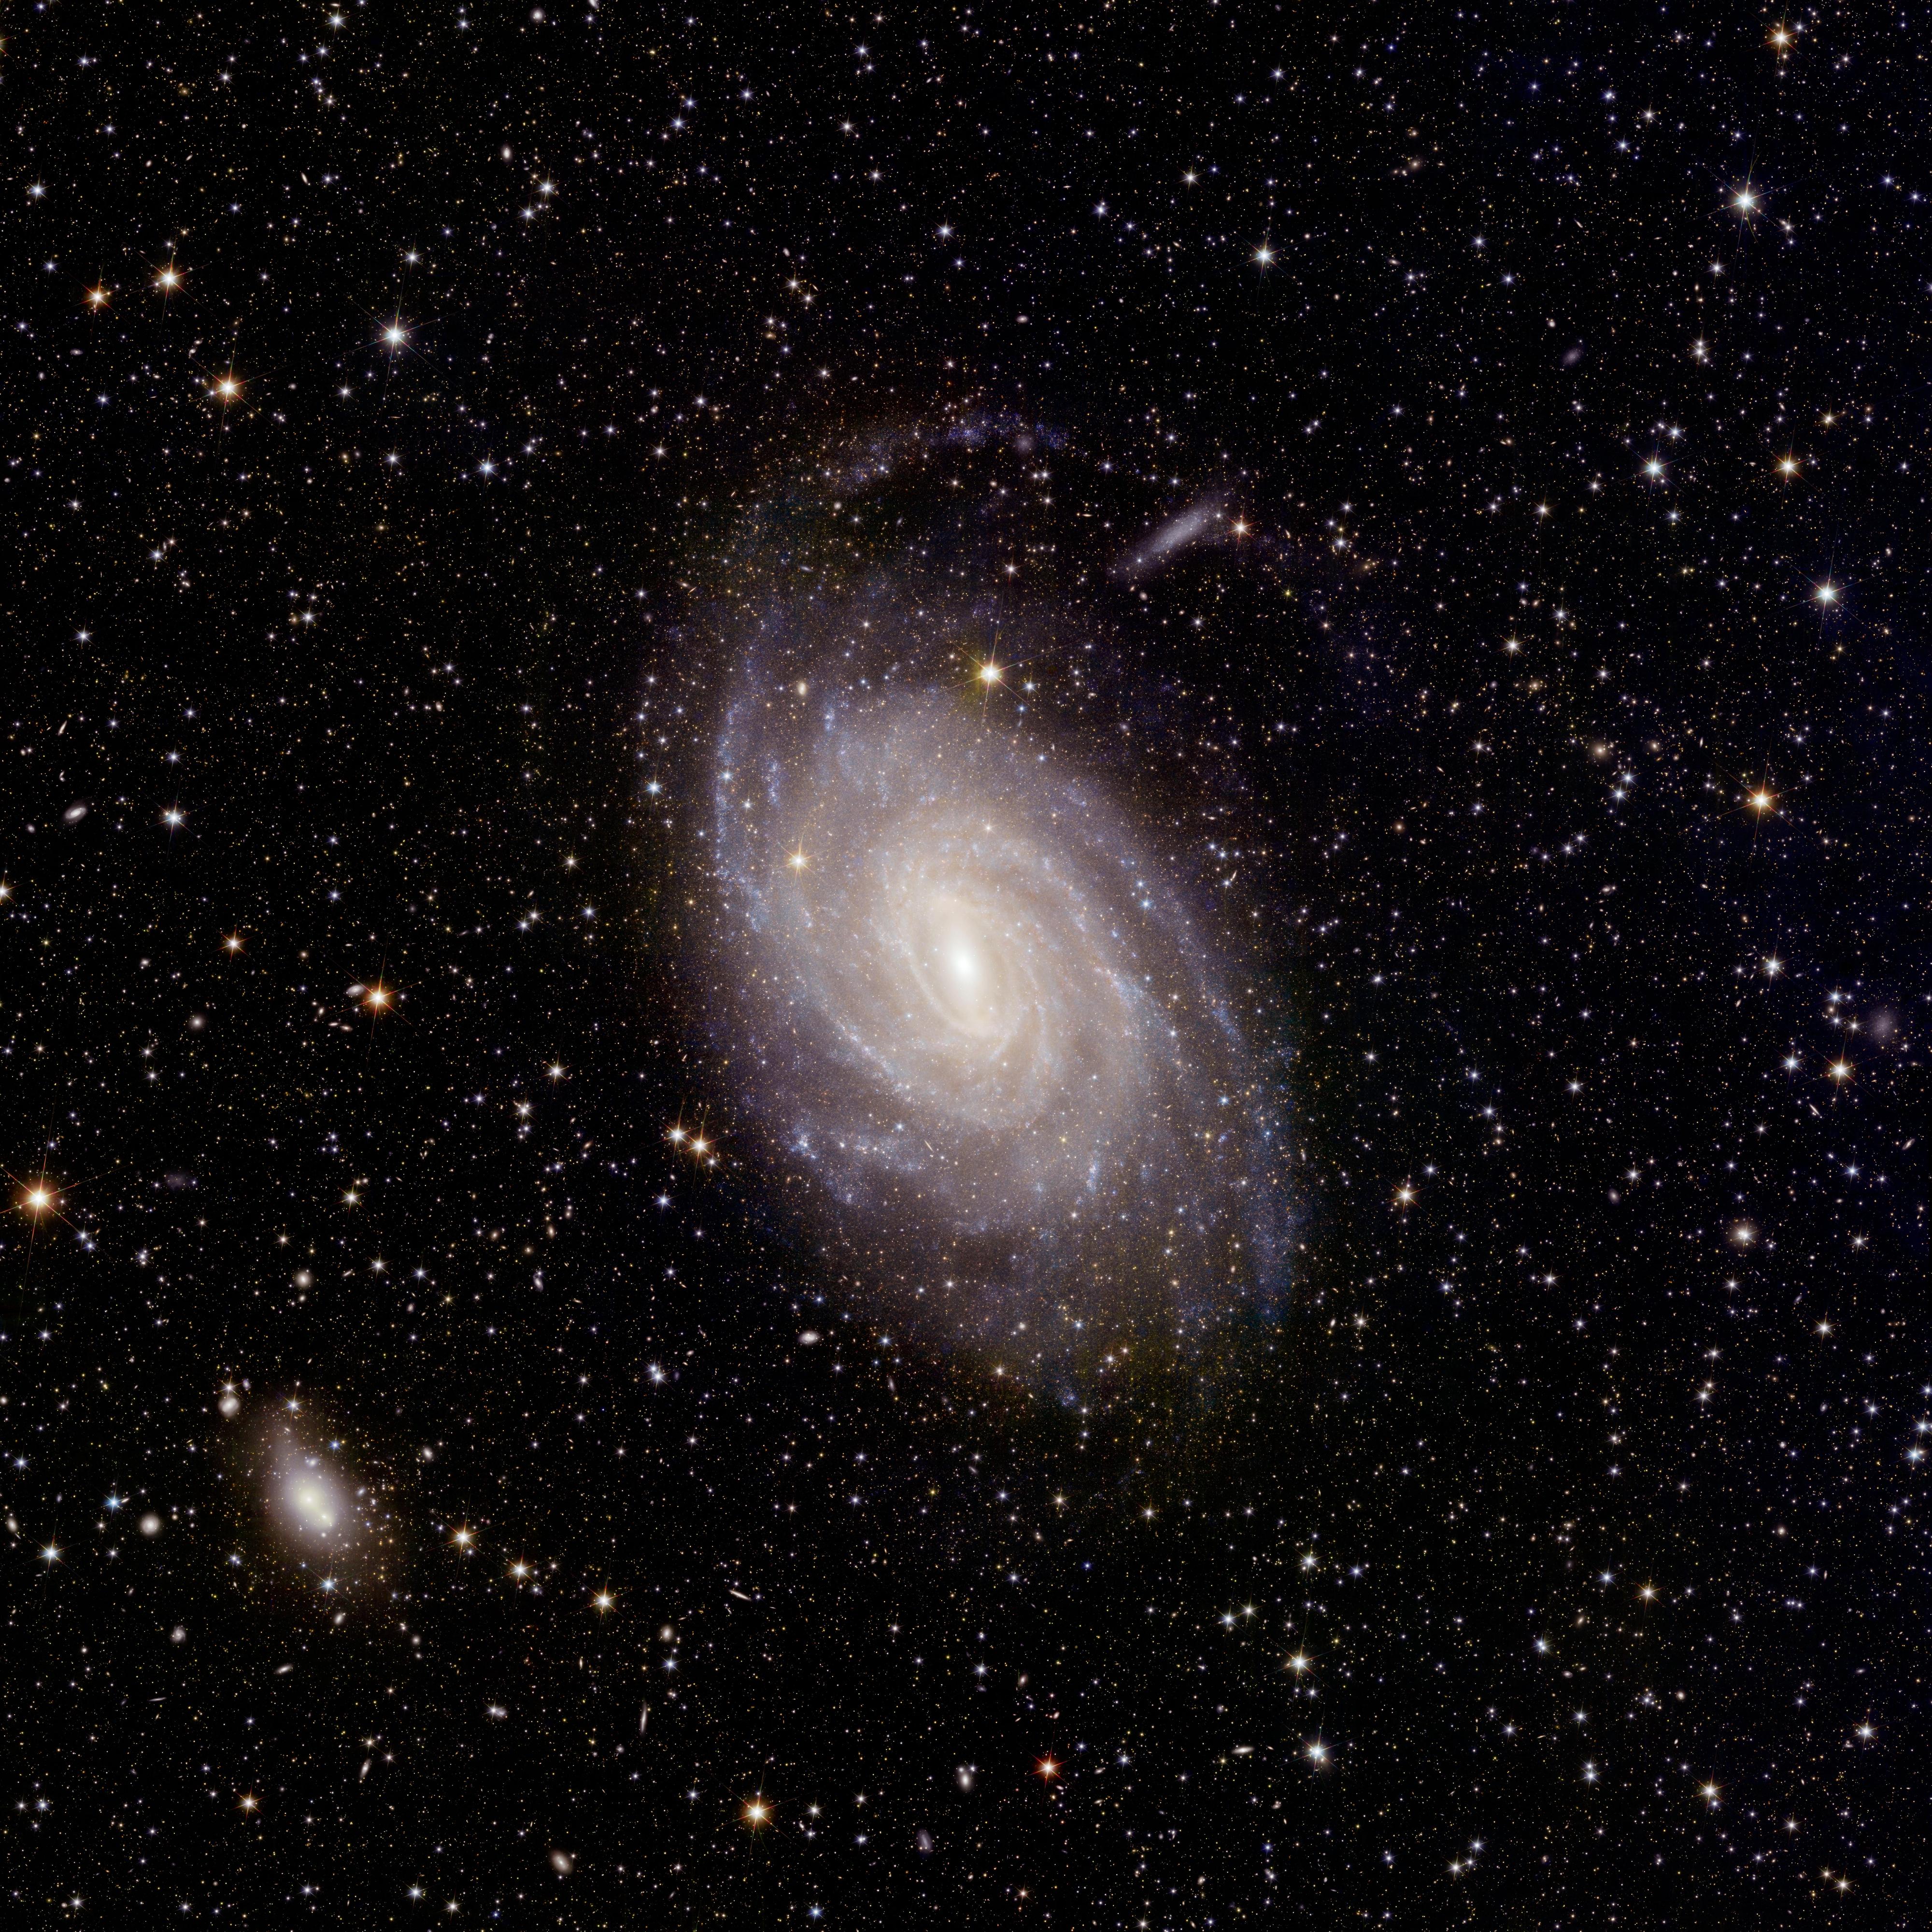 Le grand champ de vision d'Euclid couvre l'ensemble de la galaxie NGC 6744, capturant non seulement sa structure spirale à grande échelle, mais aussi de délicats détails à petite échelle spatiale, comme des couloirs de poussière ressemblant à des plumes émergeant des bras spiraux. [ESA/Euclid/Euclid Consortium/NASA - image processing by J.-C. Cuillandre (CEA Paris-Saclay), G. Anselmi; CC BY-SA 3.0 IGO]